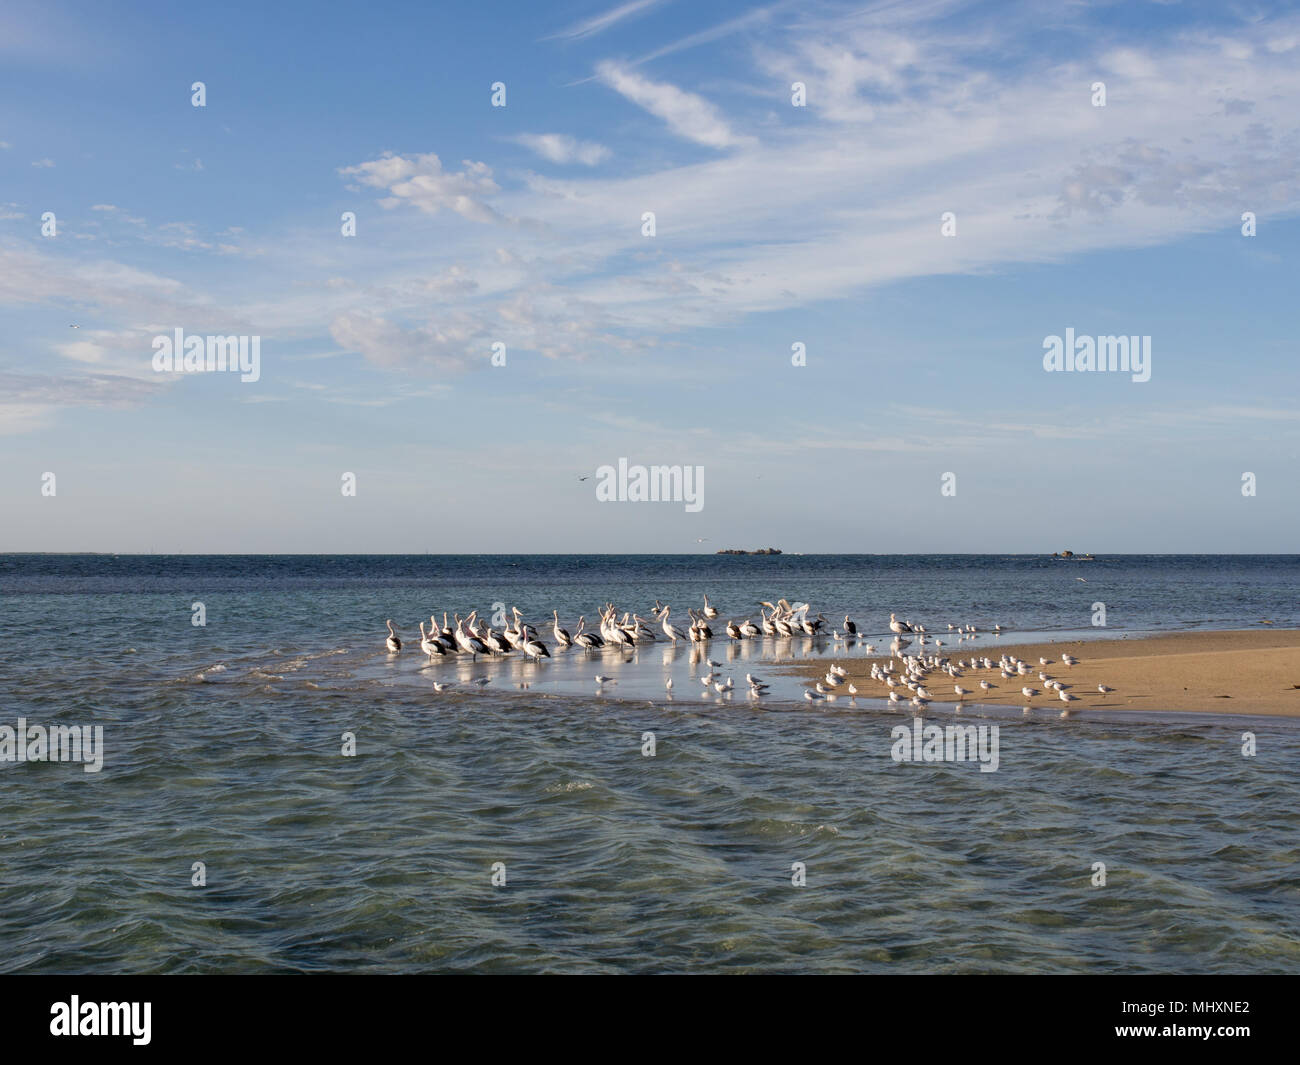 Seabirds on Penguin Island, Western Australia Stock Photo